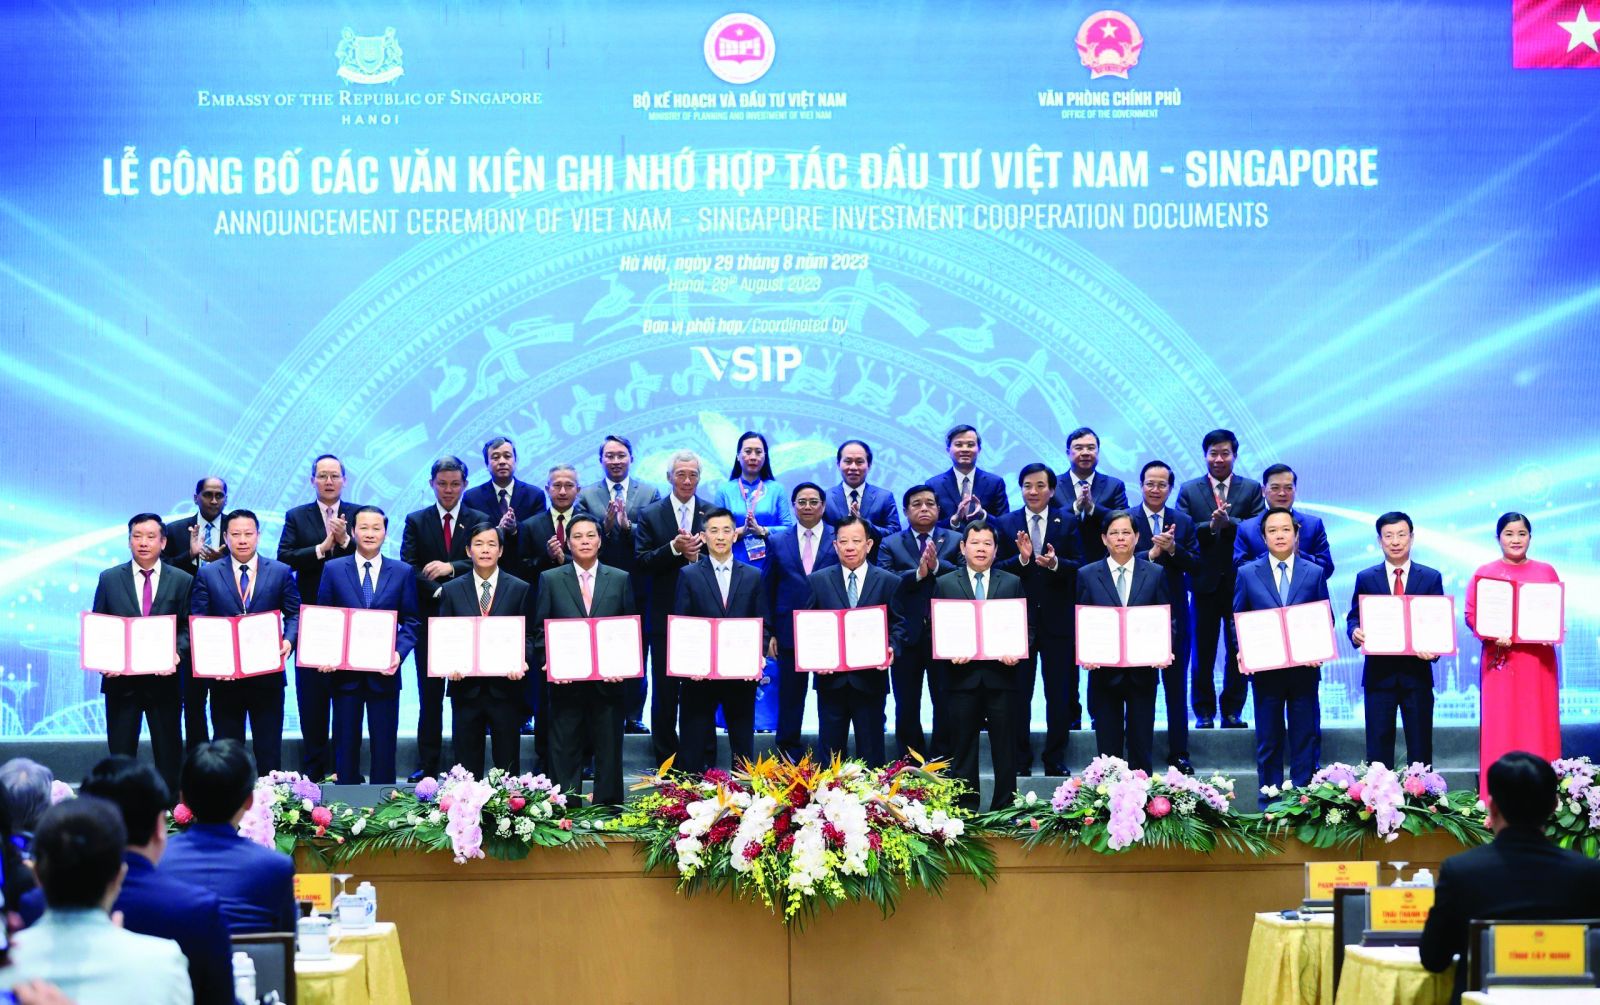  Tỉnh Thừa Thiên Huế tham gia ký kết biên bản hợp tác với VSIP tại Hội nghị thúc đẩy triển khai các dự án hợp tác đầu tư Việt Nam - Singapore